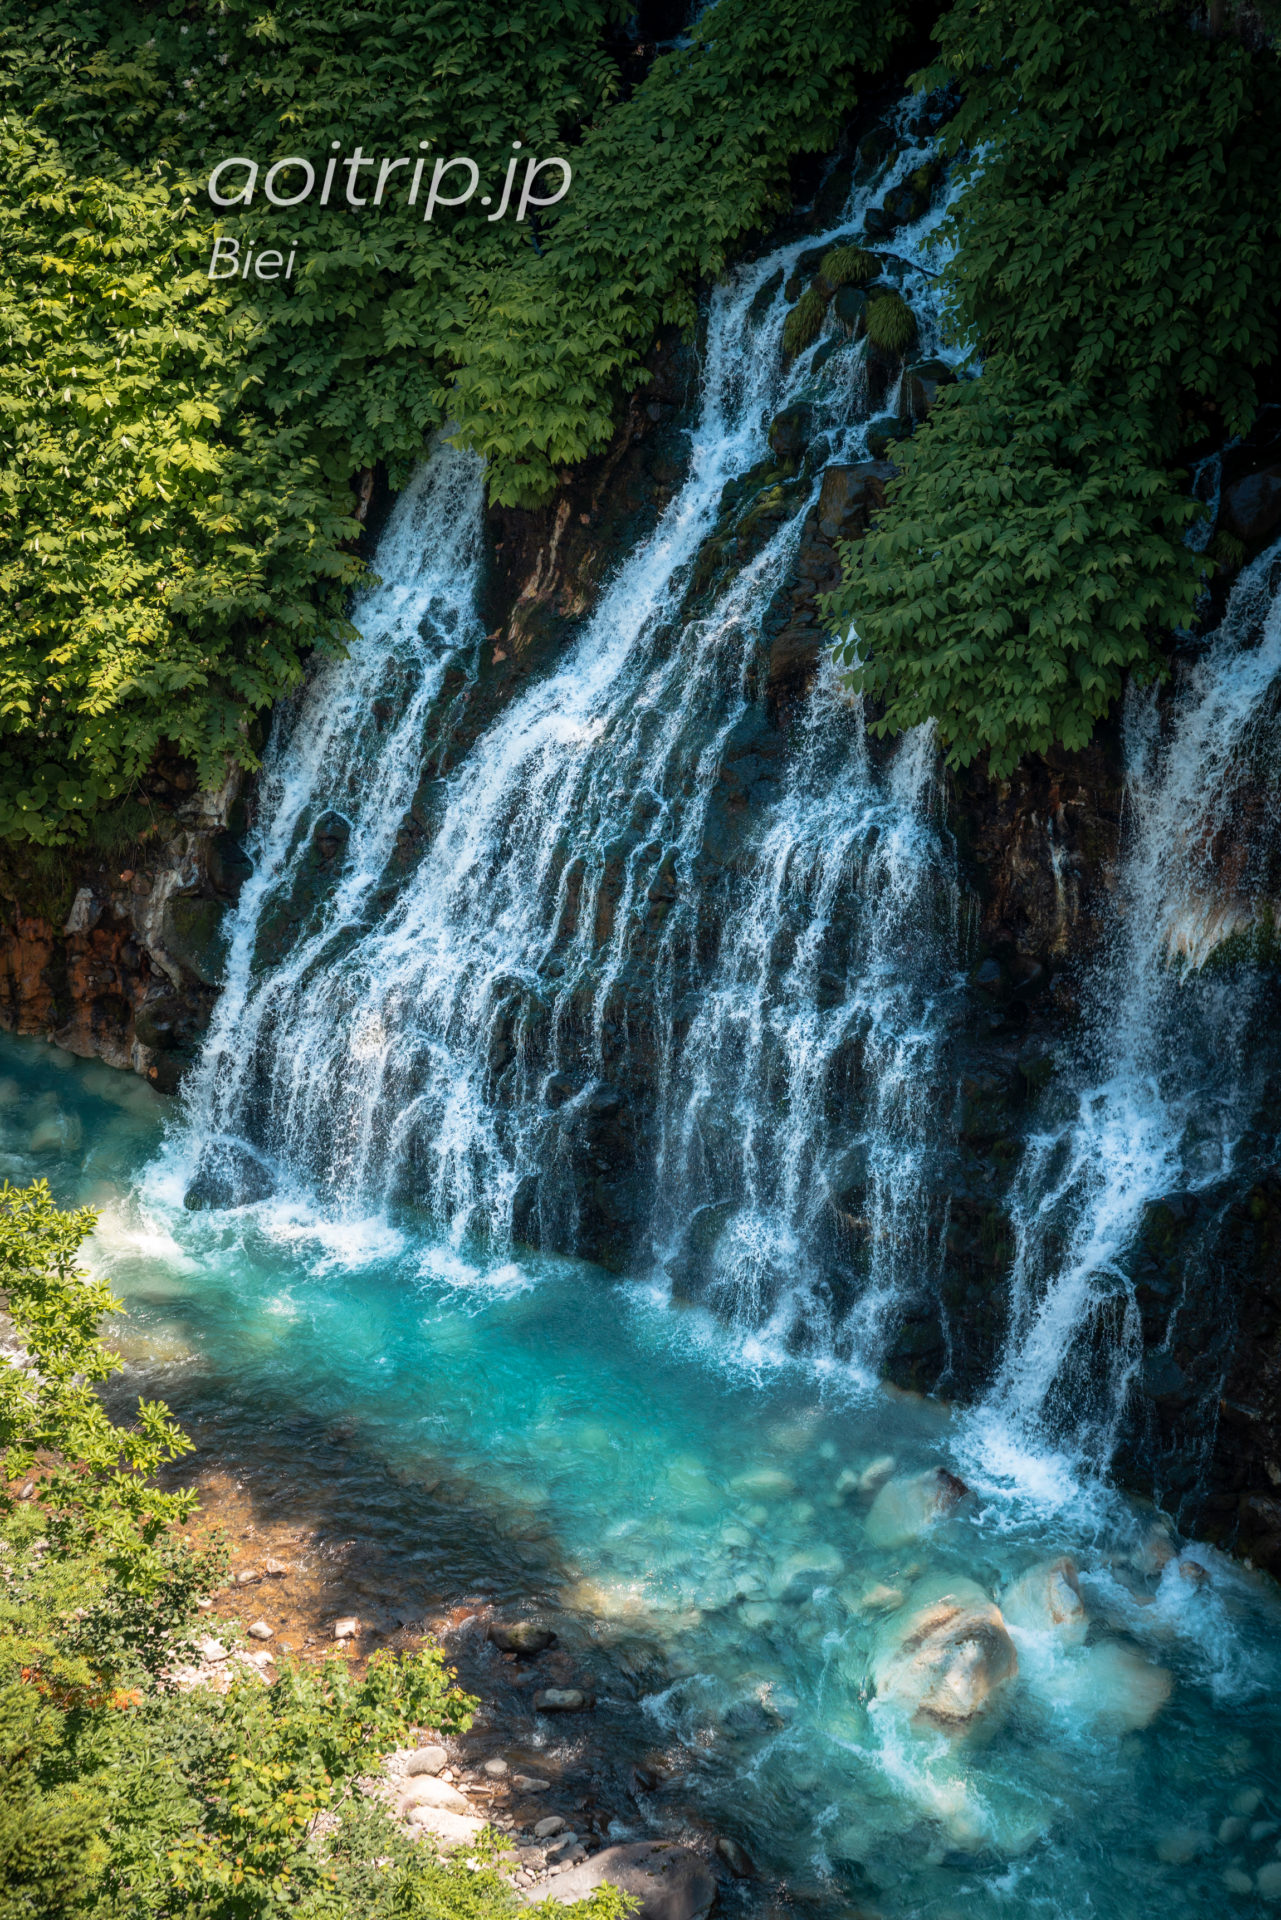 美瑛町 白ひげの滝 Shirahige Falls, Biei